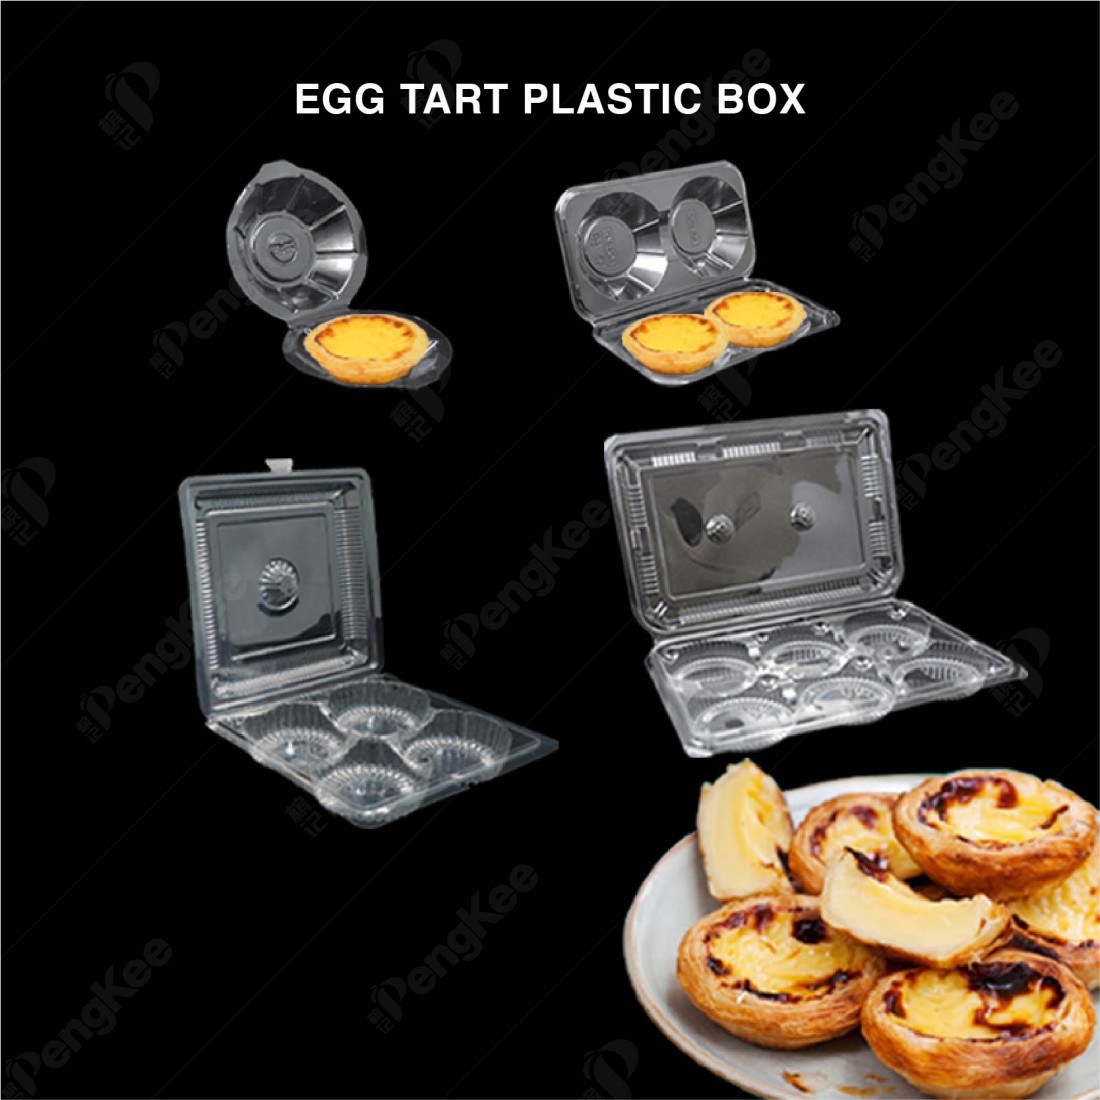 PLASTIC BOX FOR EGG TART 